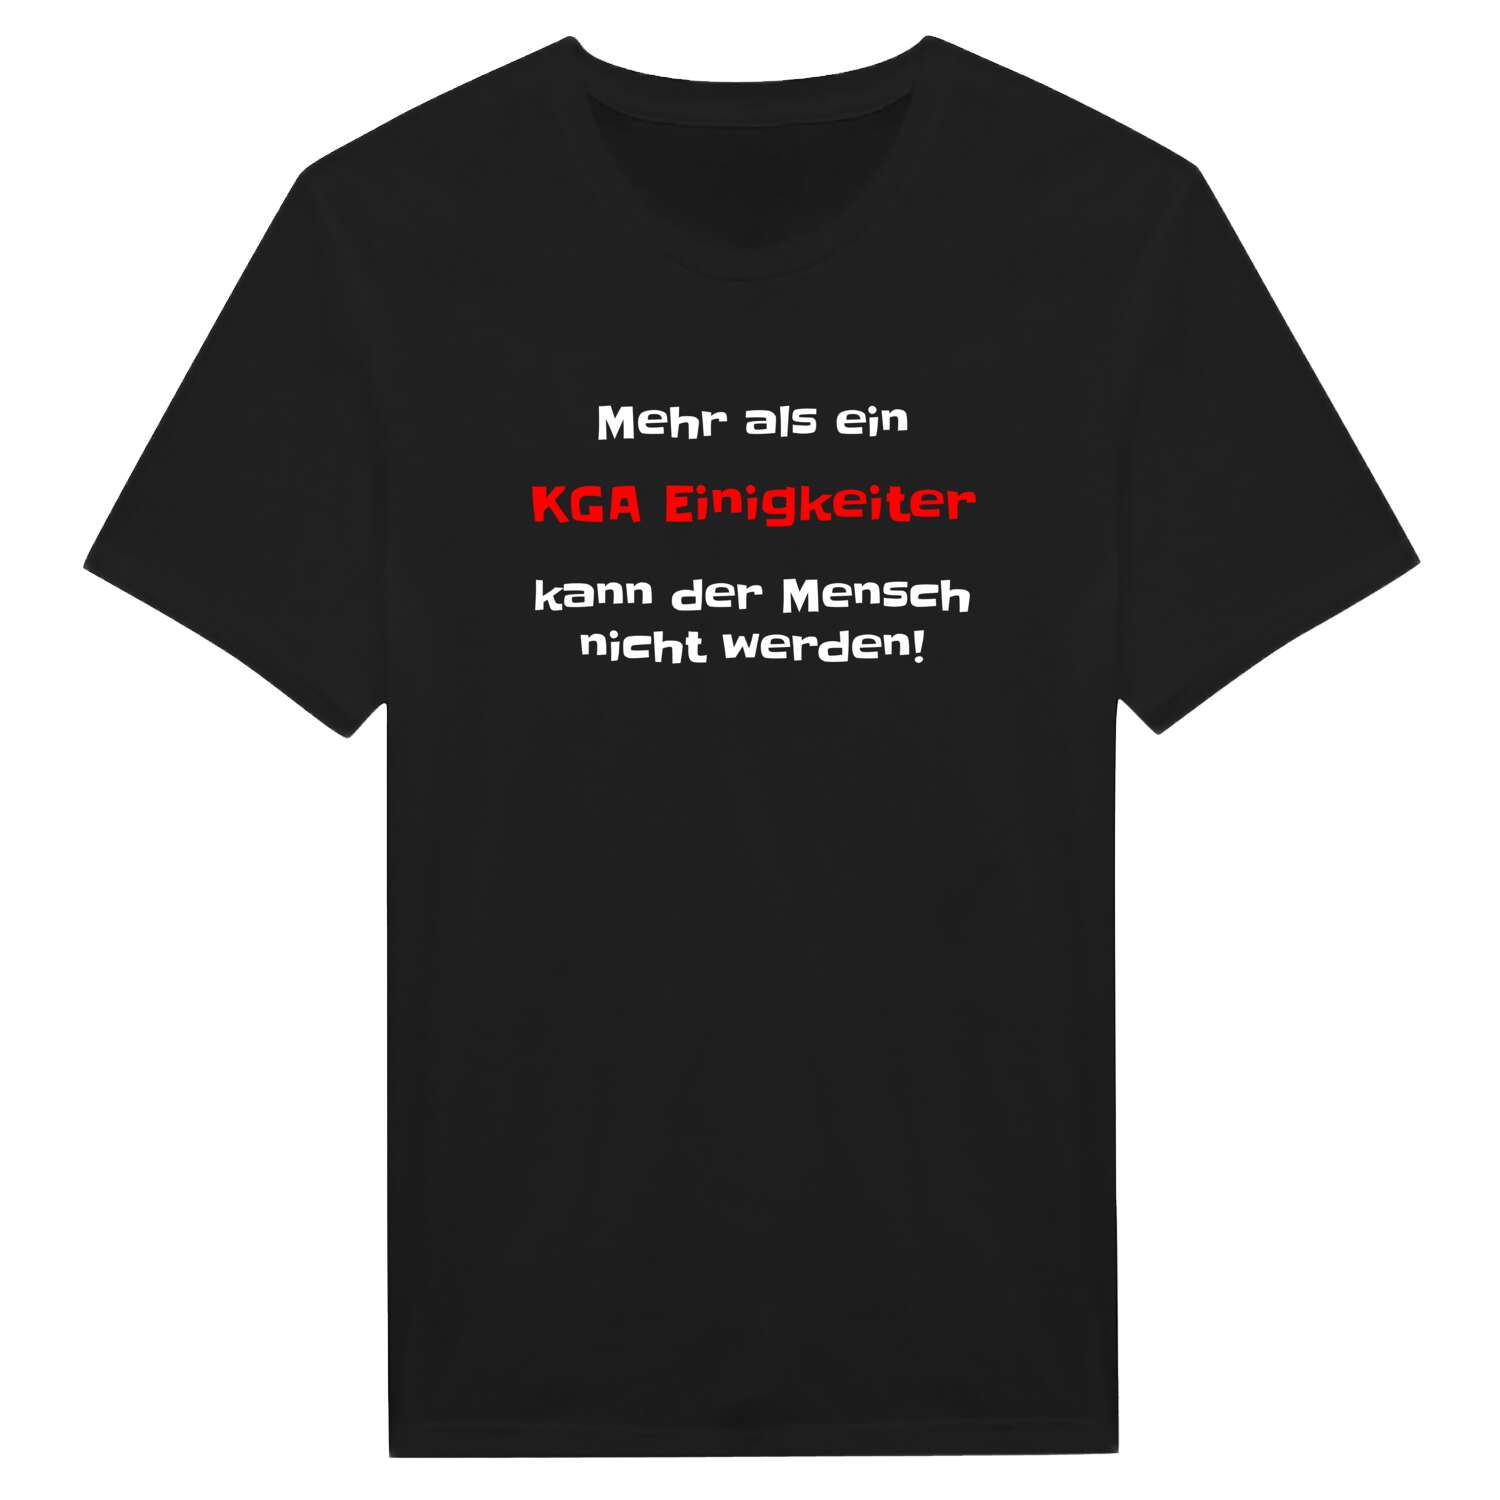 KGA Einigkeit T-Shirt »Mehr als ein«